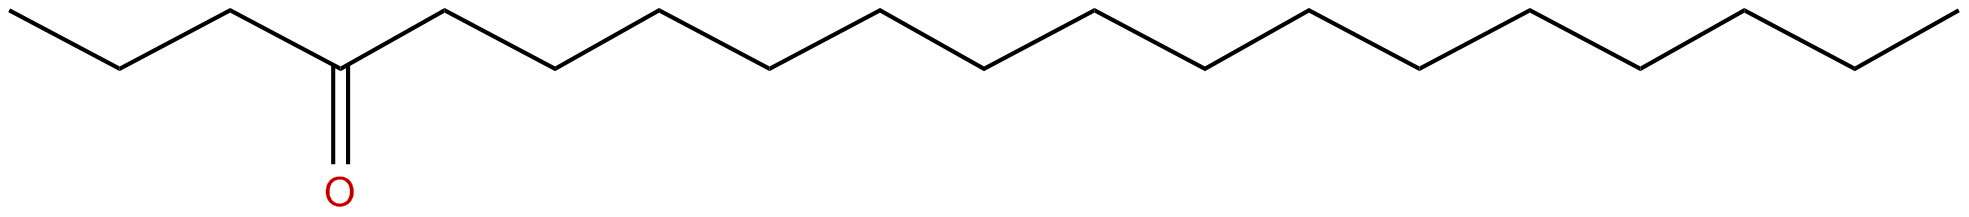 Image of 4-nonadecanone